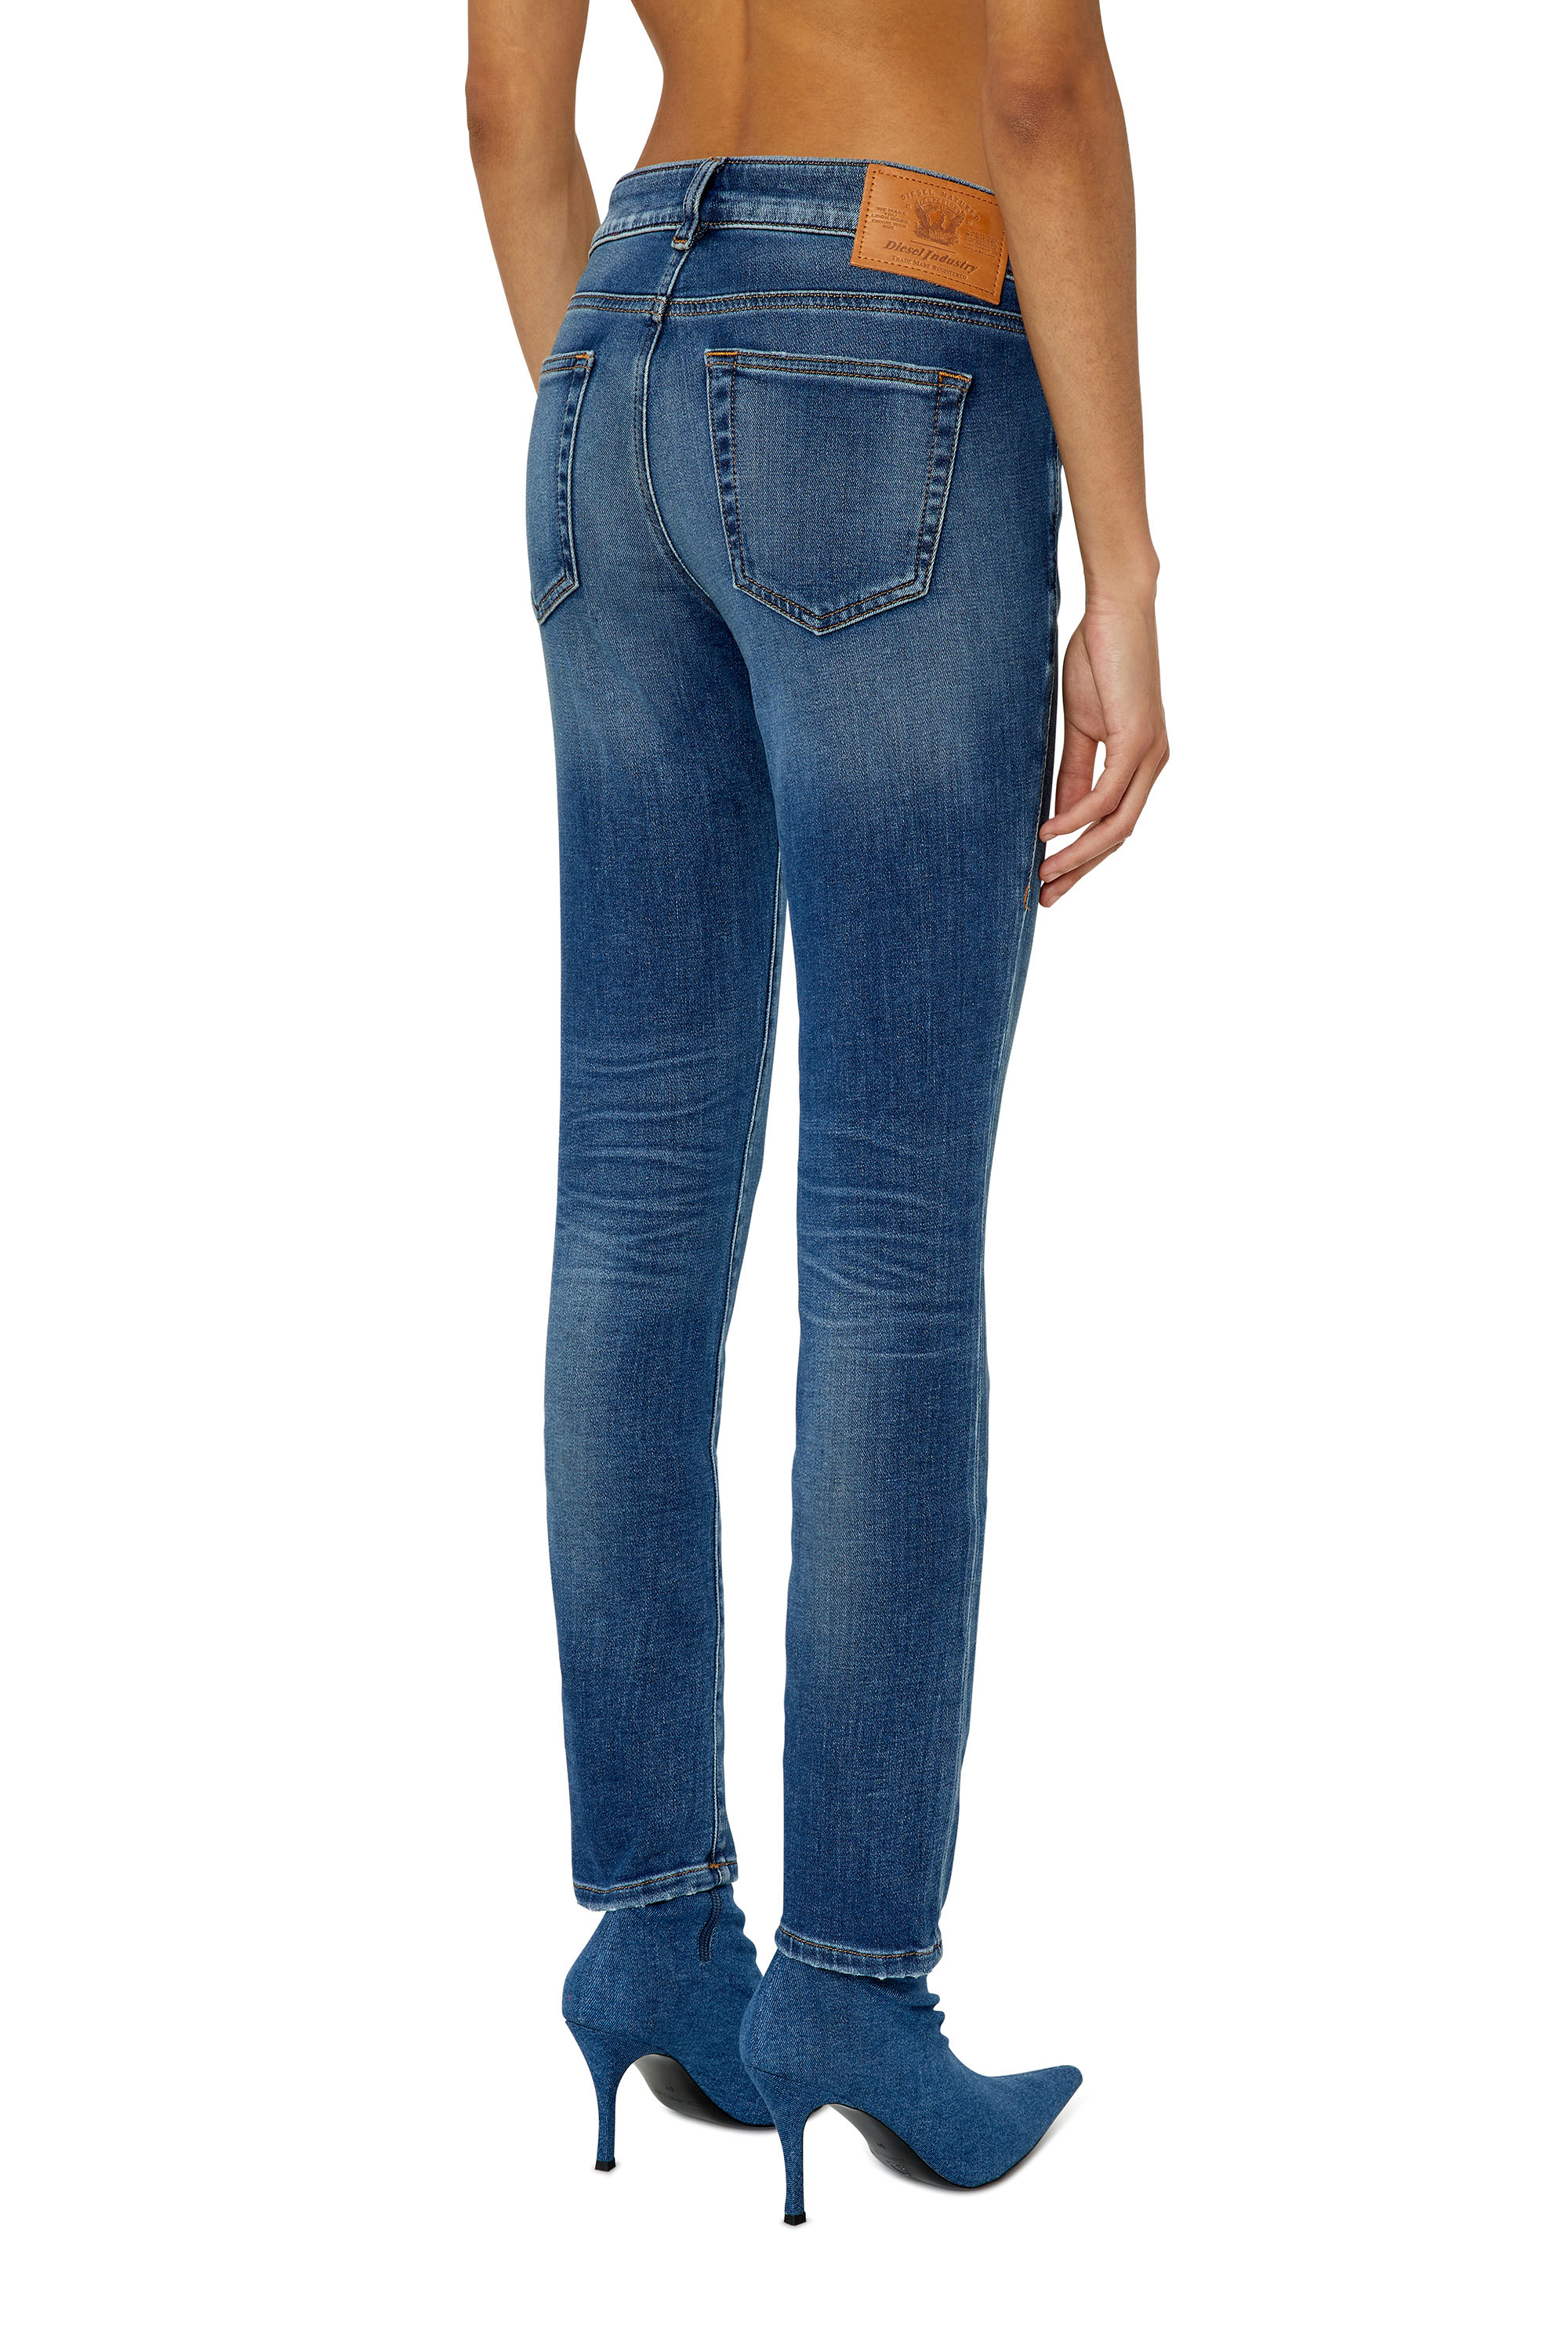 Oom of meneer visie Voetzool Women's JoggJeans®: High-waisted, baggy, tapered jeans | Diesel®